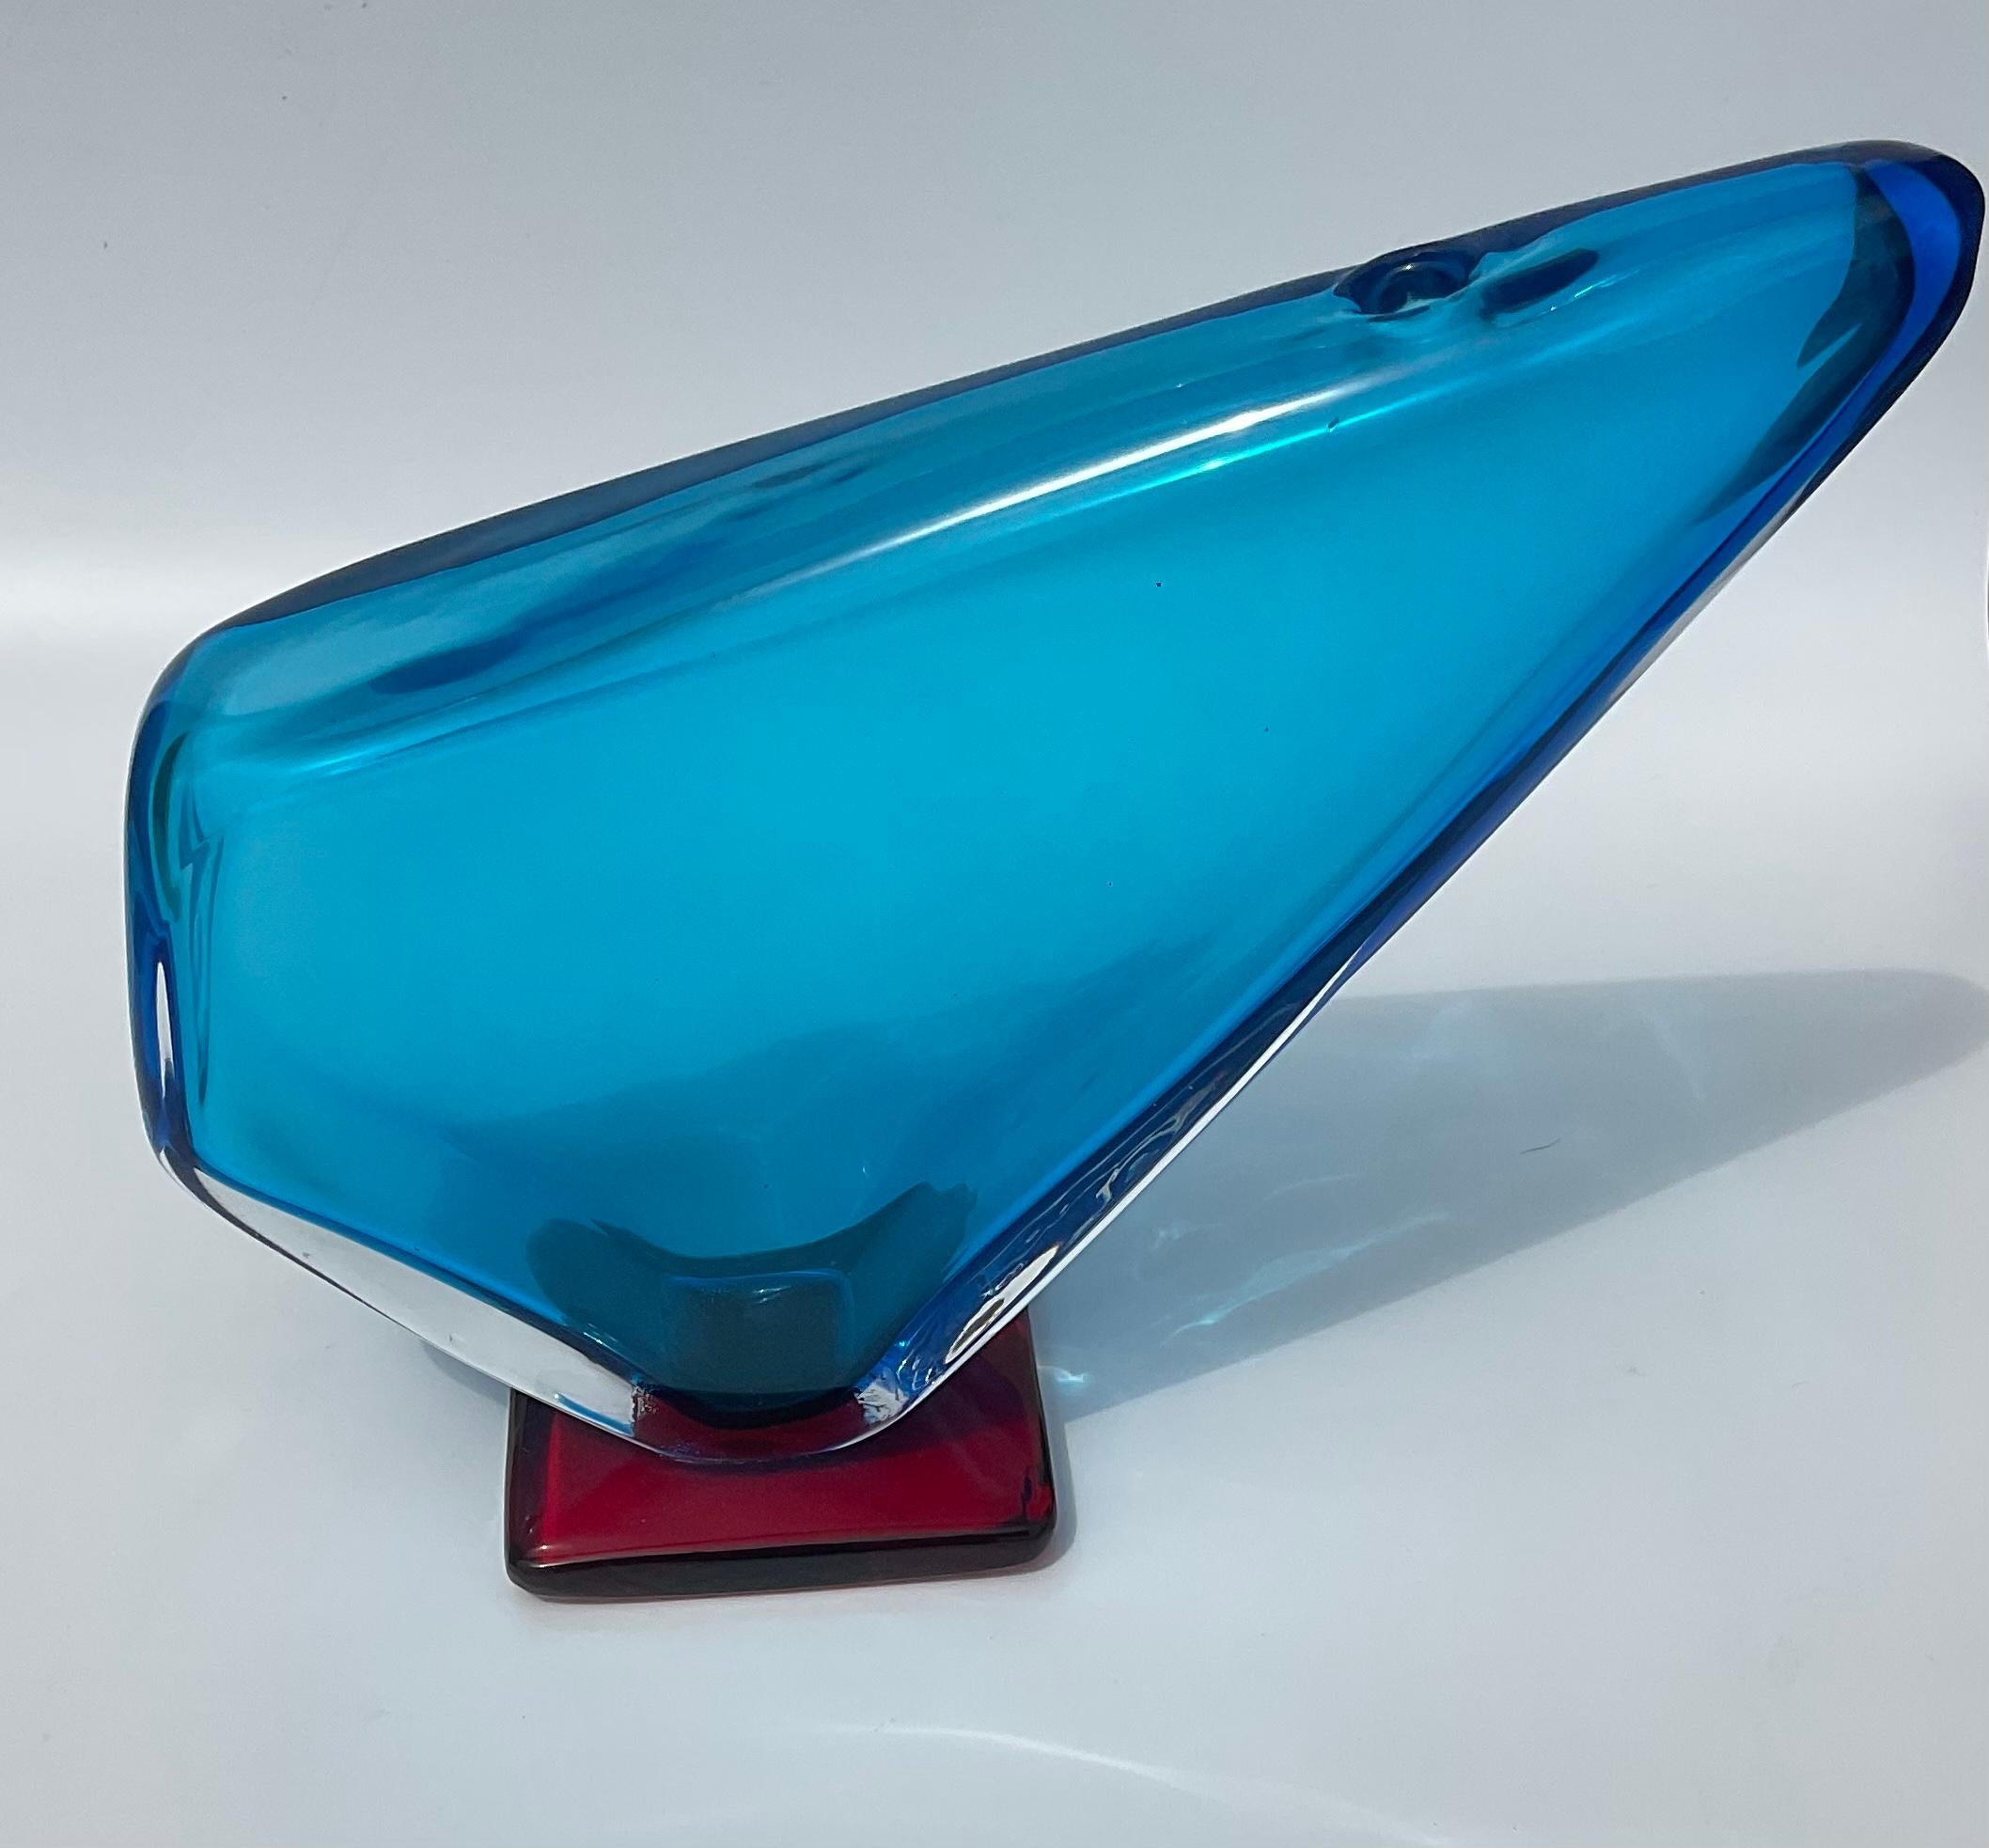 Vase triangulaire en verre de Murano bleu signé Alfredo Barbini avec surface irriguée. Le vase a été conçu en 1962. Ce vase a un pied rouge appliqué et il est signé par l'Artiste Alfredo Barbini. Un exemple de grande taille et souhaitable. 